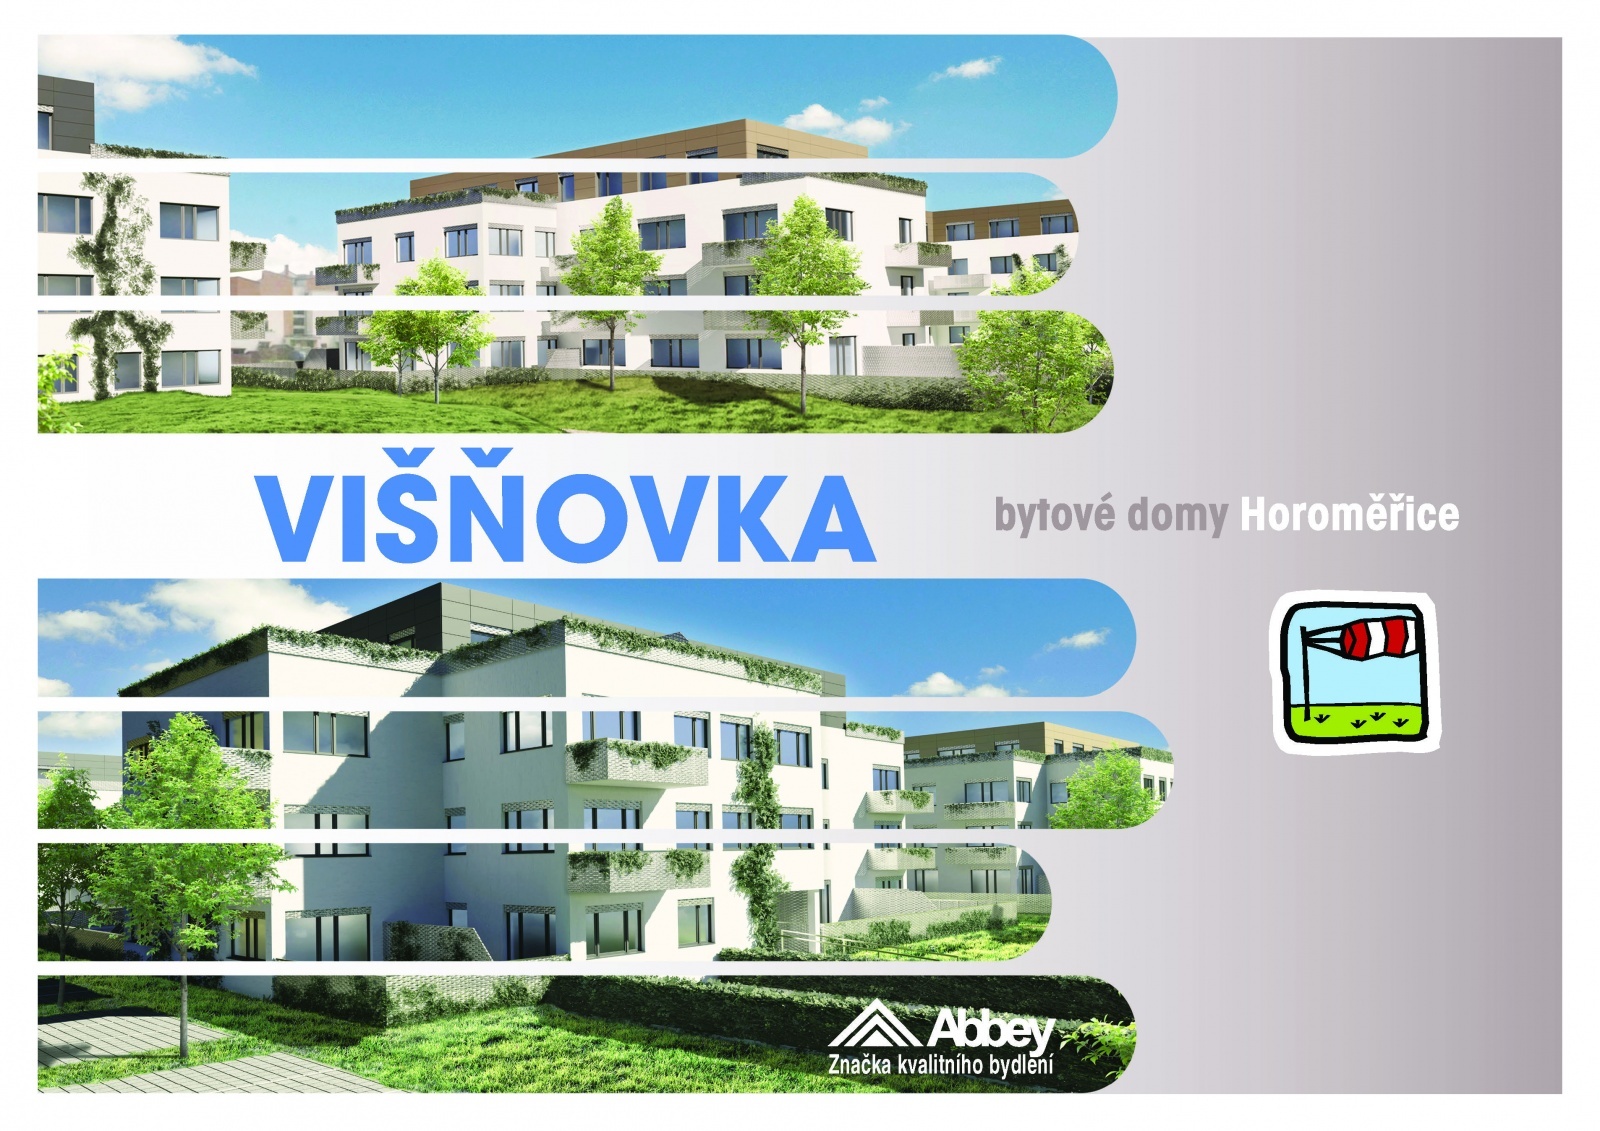 Studio 3+kk, 81.4 m2, Horoměřice, Projekt Višnovka - bytové domy